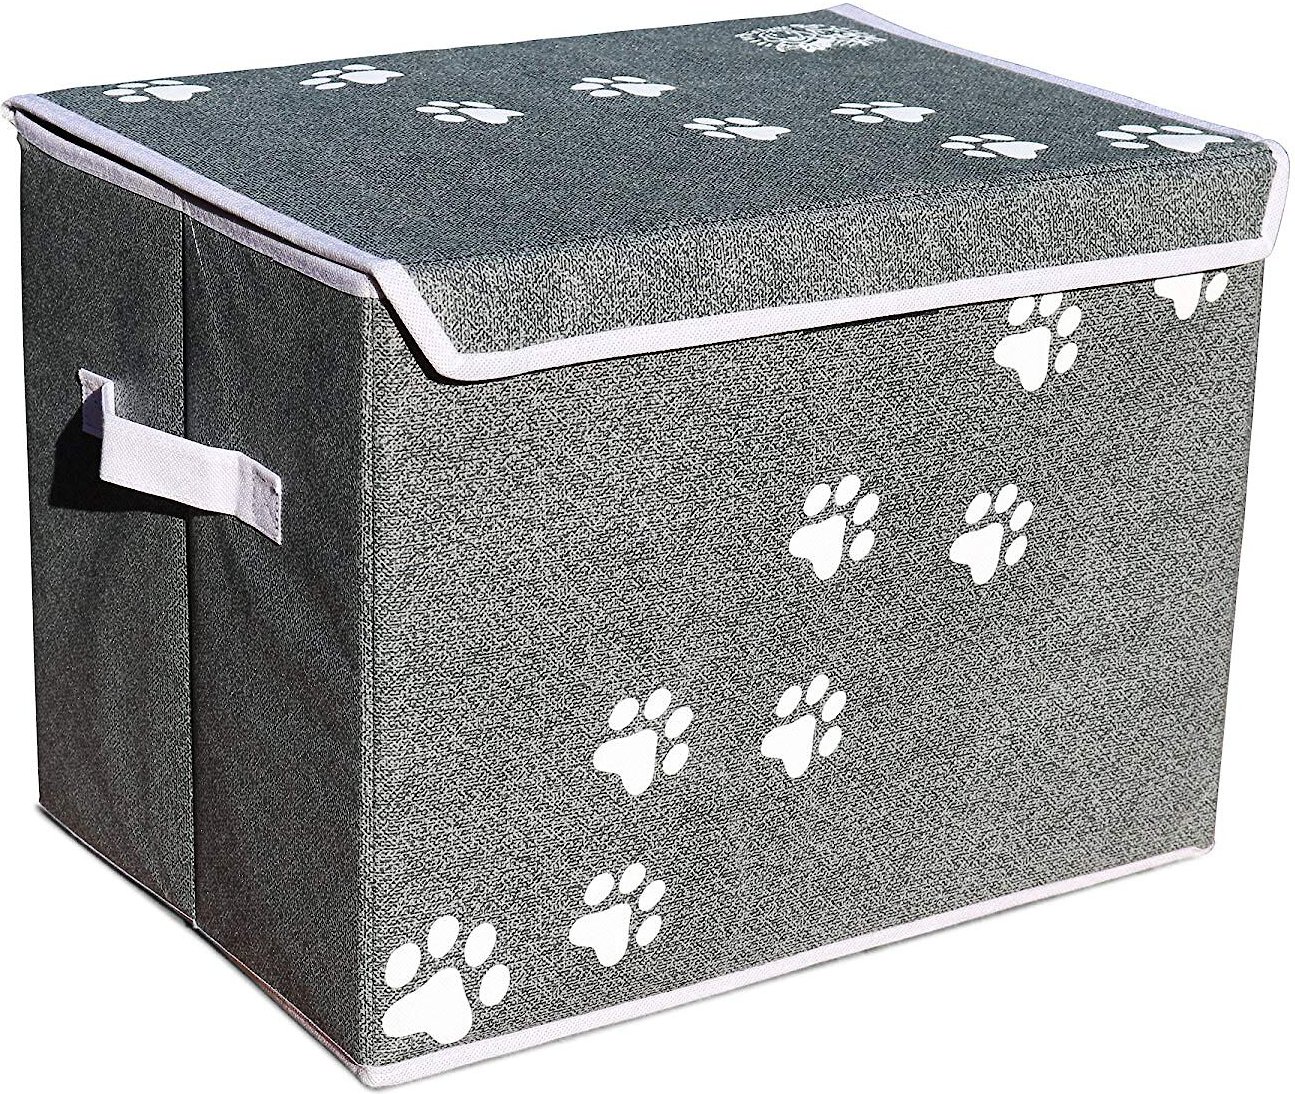 Cat Toy Bin with Wooden Handle Pet Supplies Storage Basket-Grey Xbopetda Fiber Soft Felt Cat Storage Basket Bin Organizer 